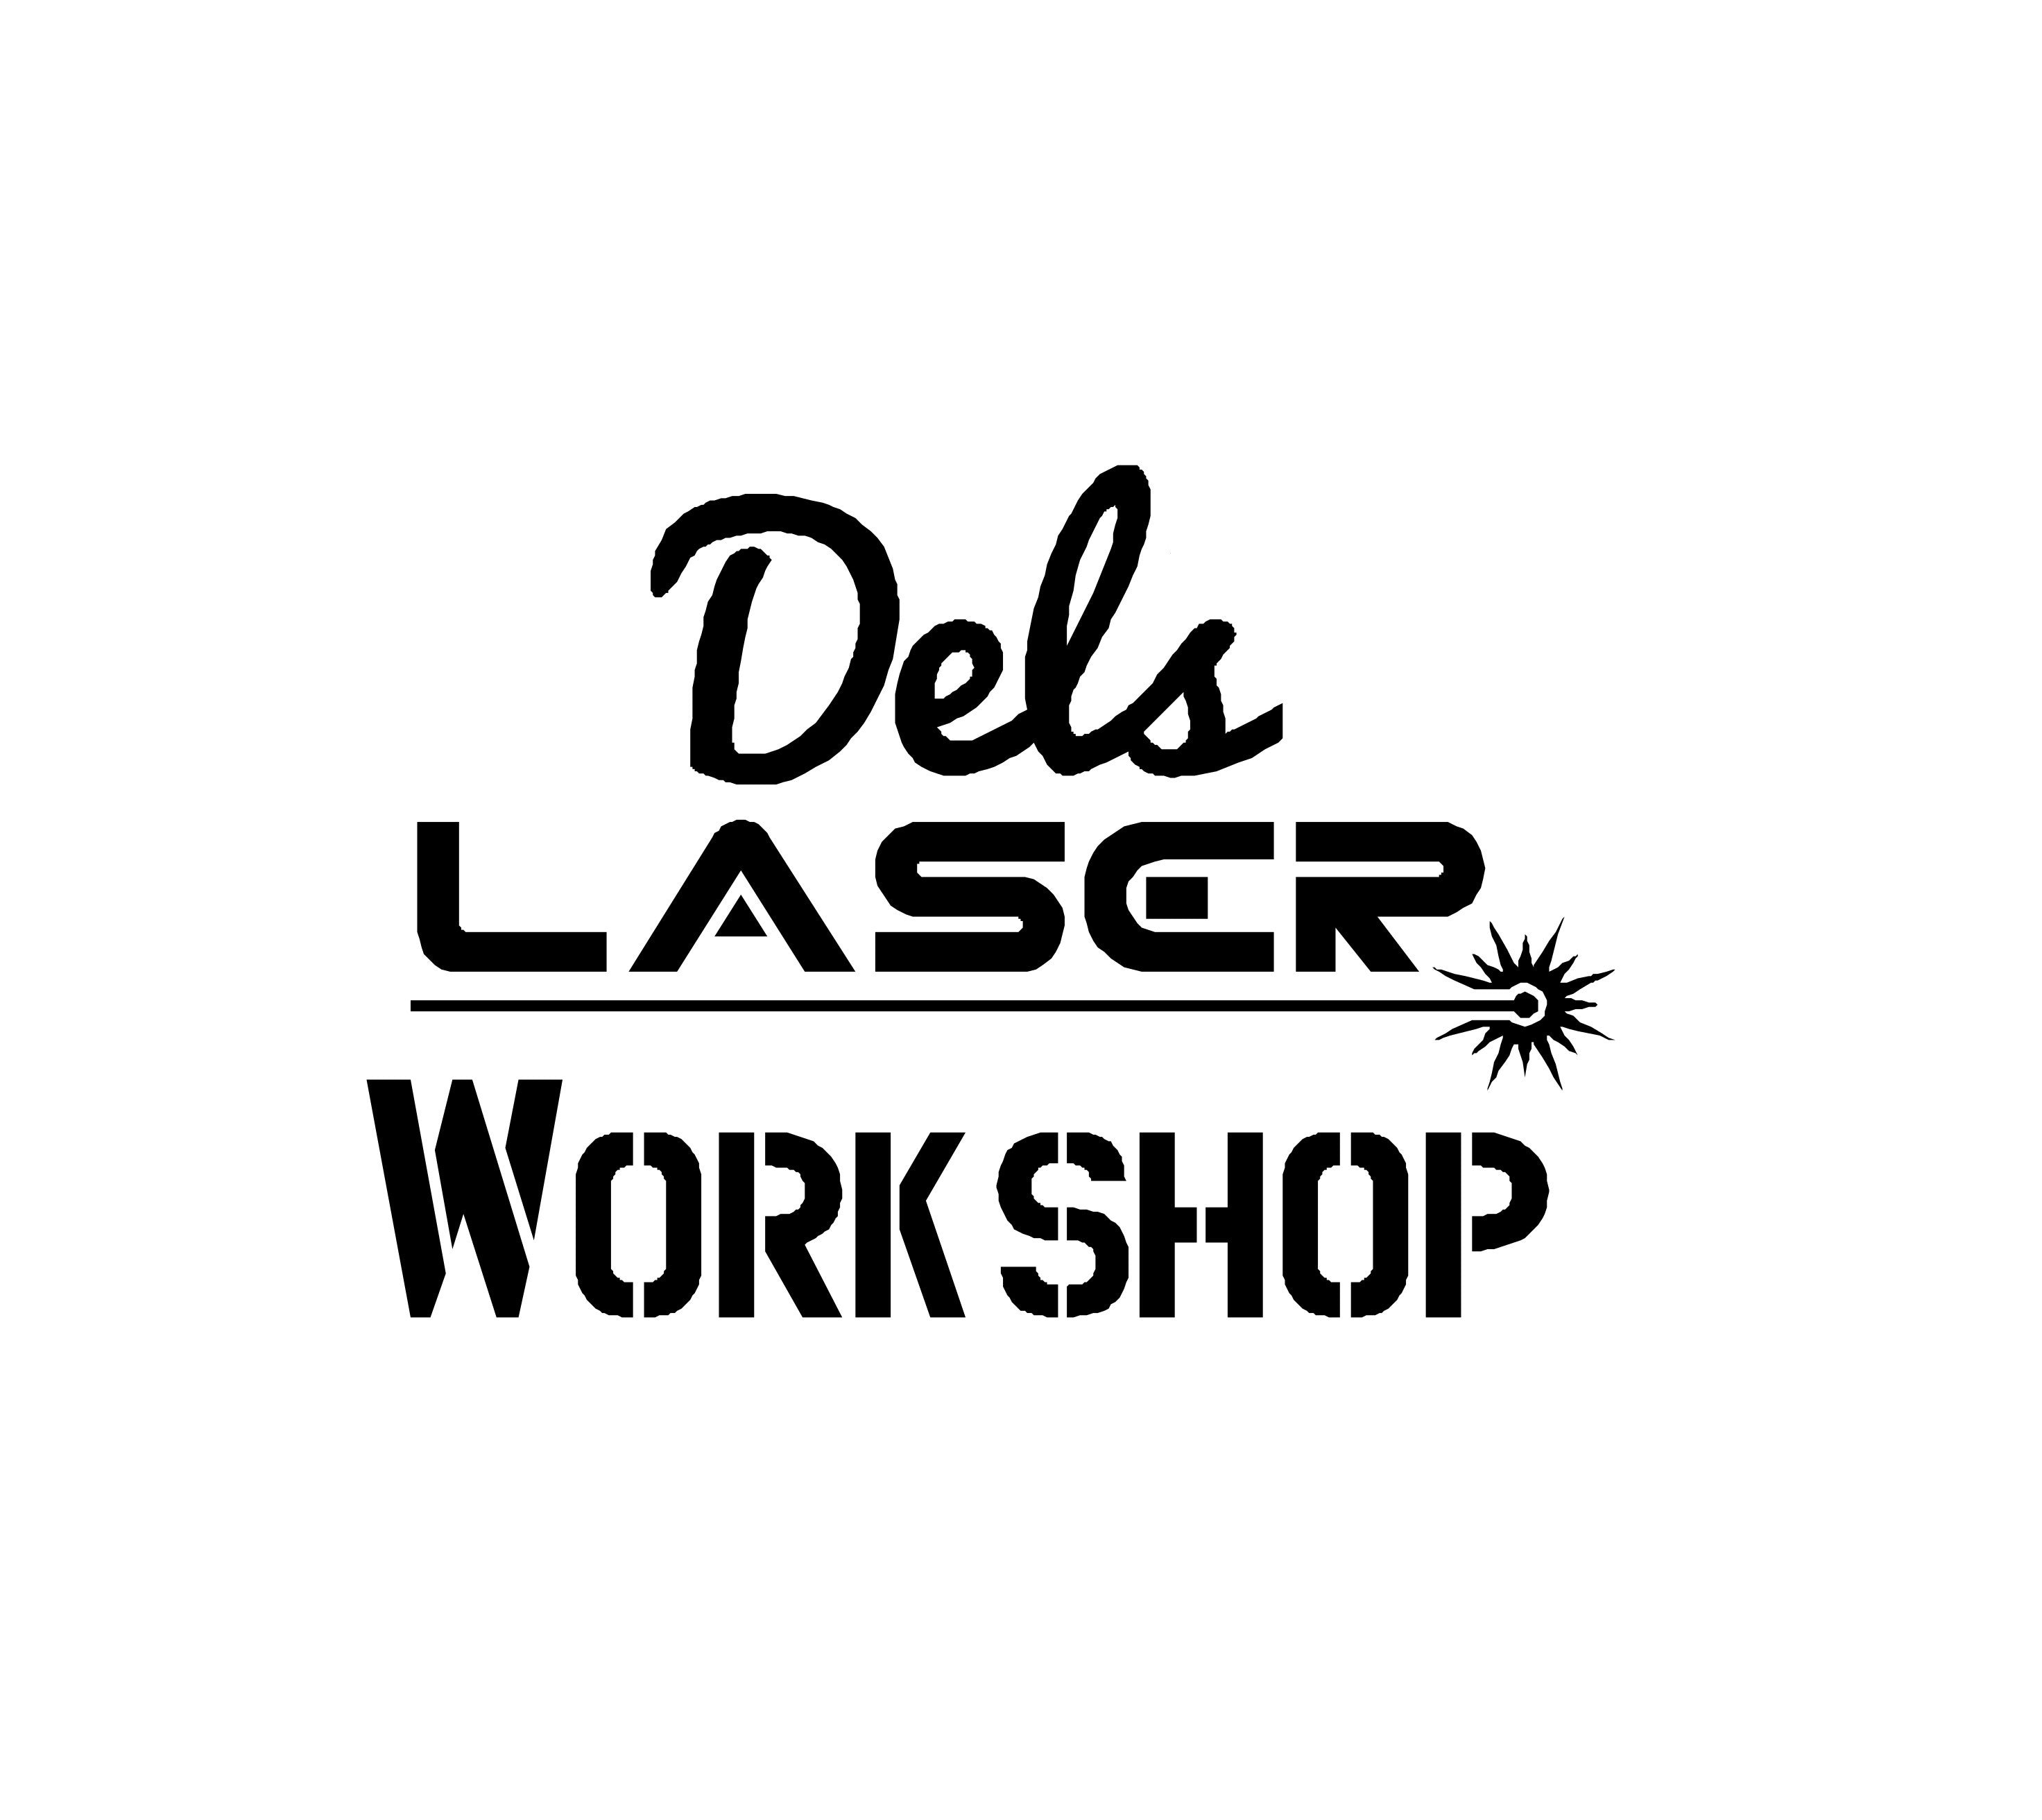 Dels laser workshop